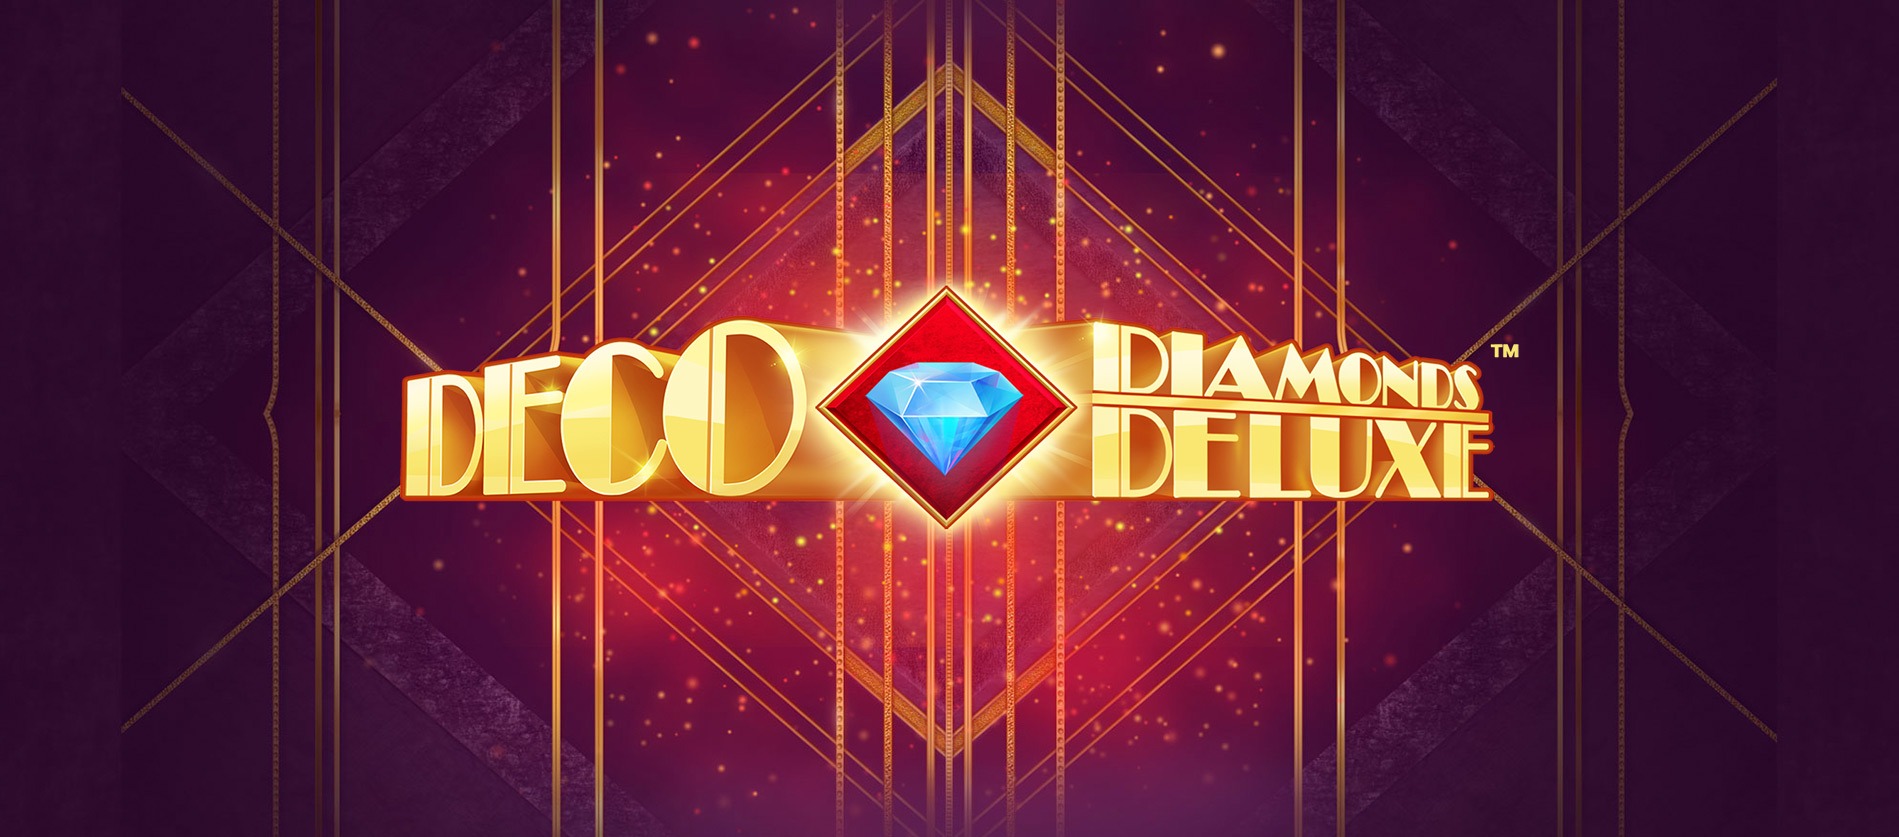 Deco Diamonds Deluxe Slot Logo Easy Slots